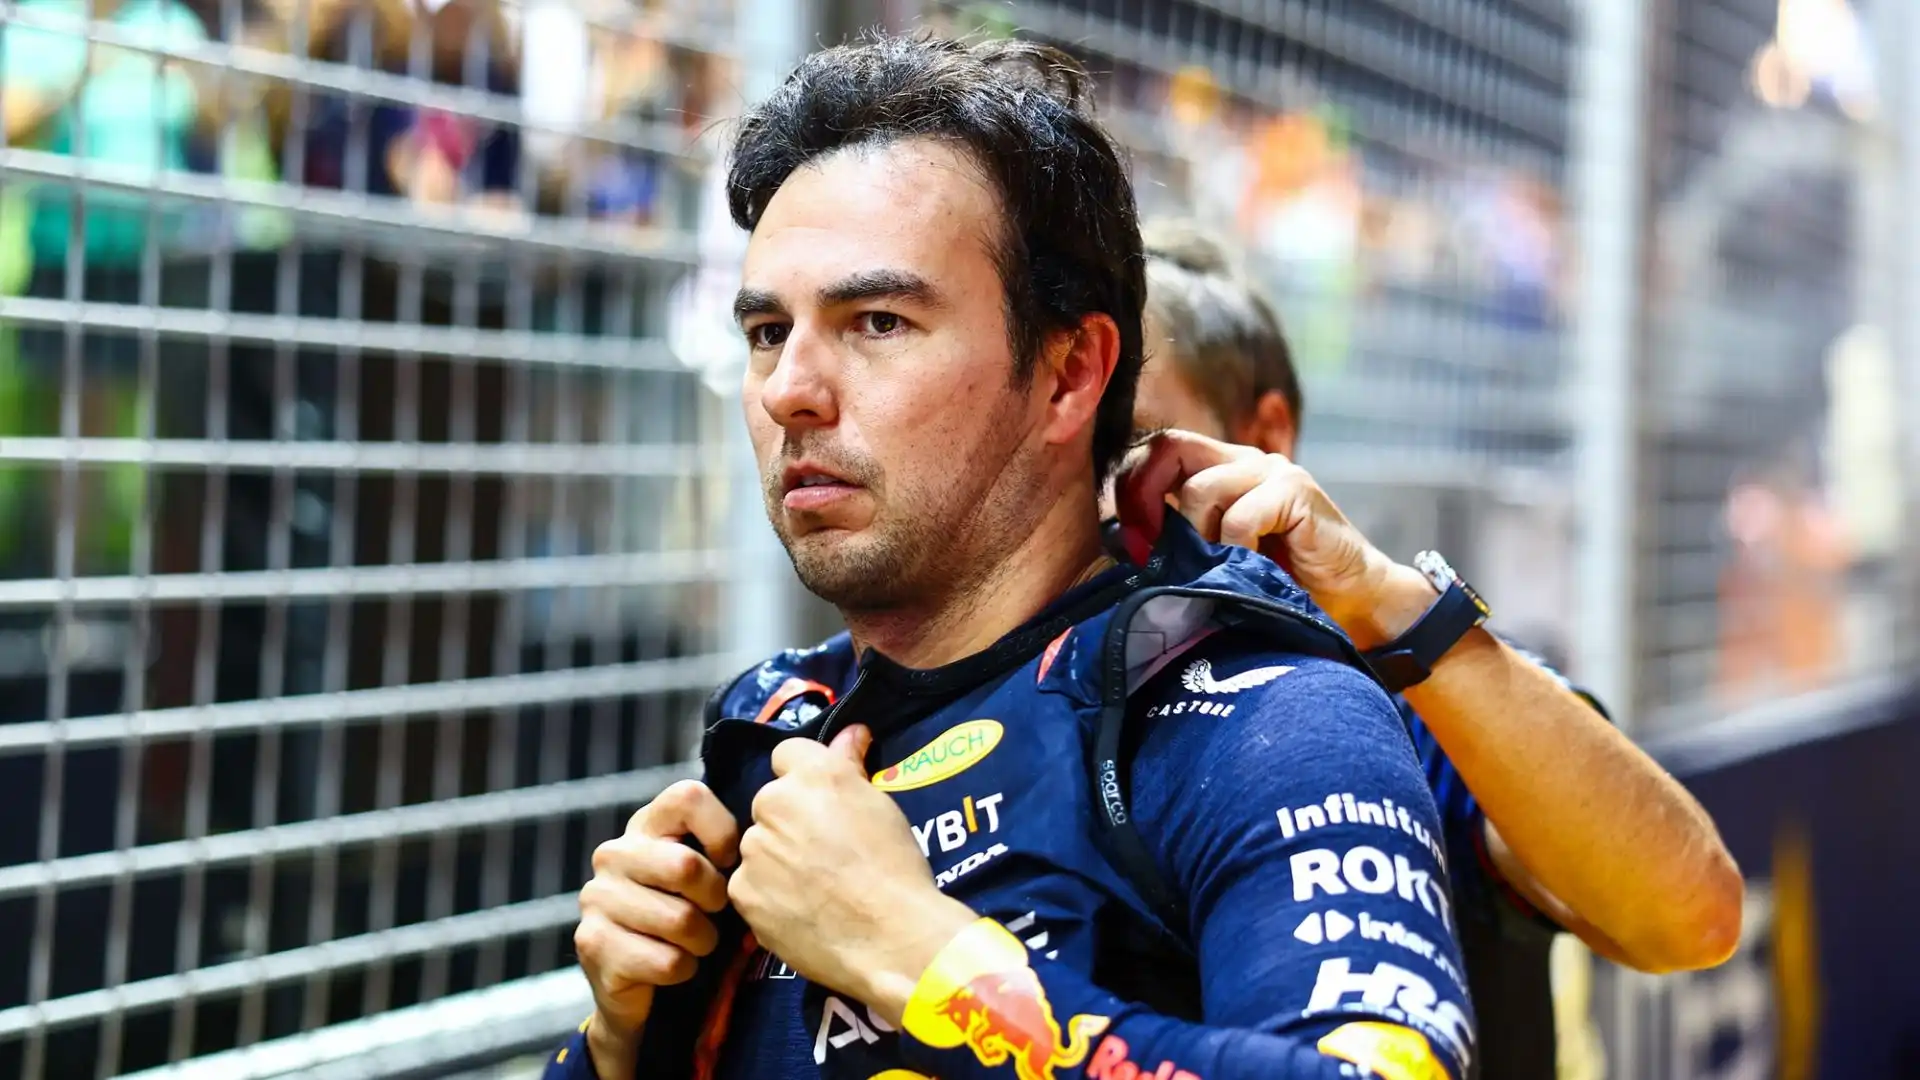 Le parole di Antonio Perez hanno scatenato una discussione sui social tra i tifosi di F1